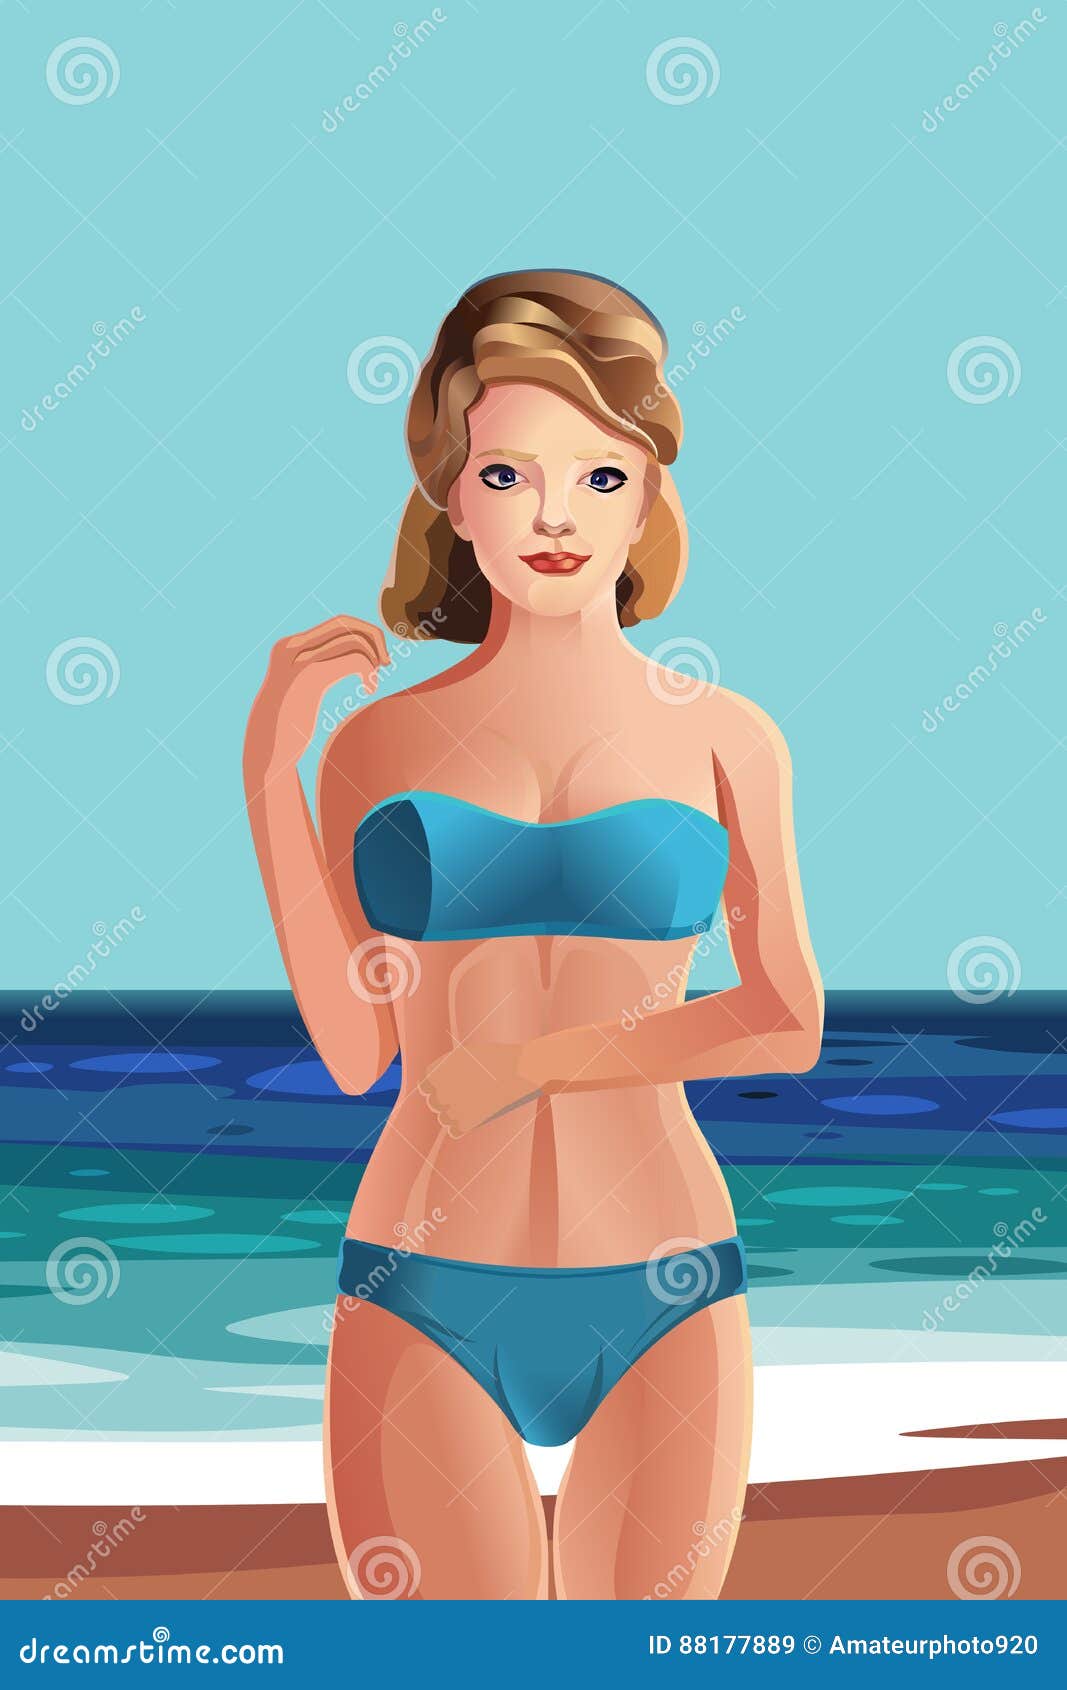 girl on beach rest in bikini